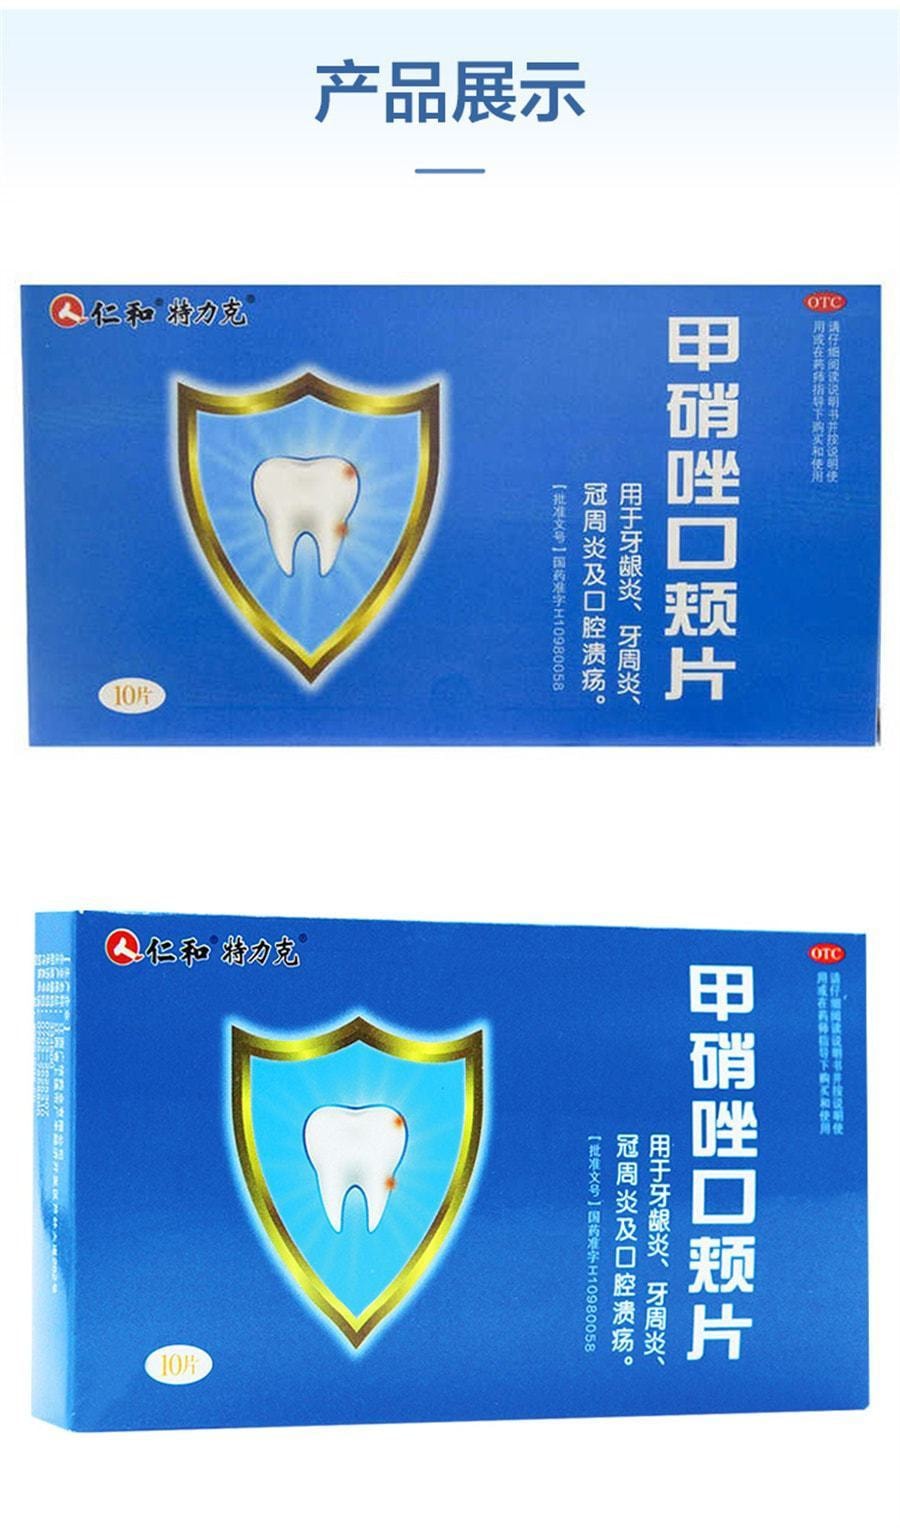 【美國極速出貨】仁和 甲硝唑口頰片 適用於牙痛 牙齦腫痛 口腔潰瘍10片/盒